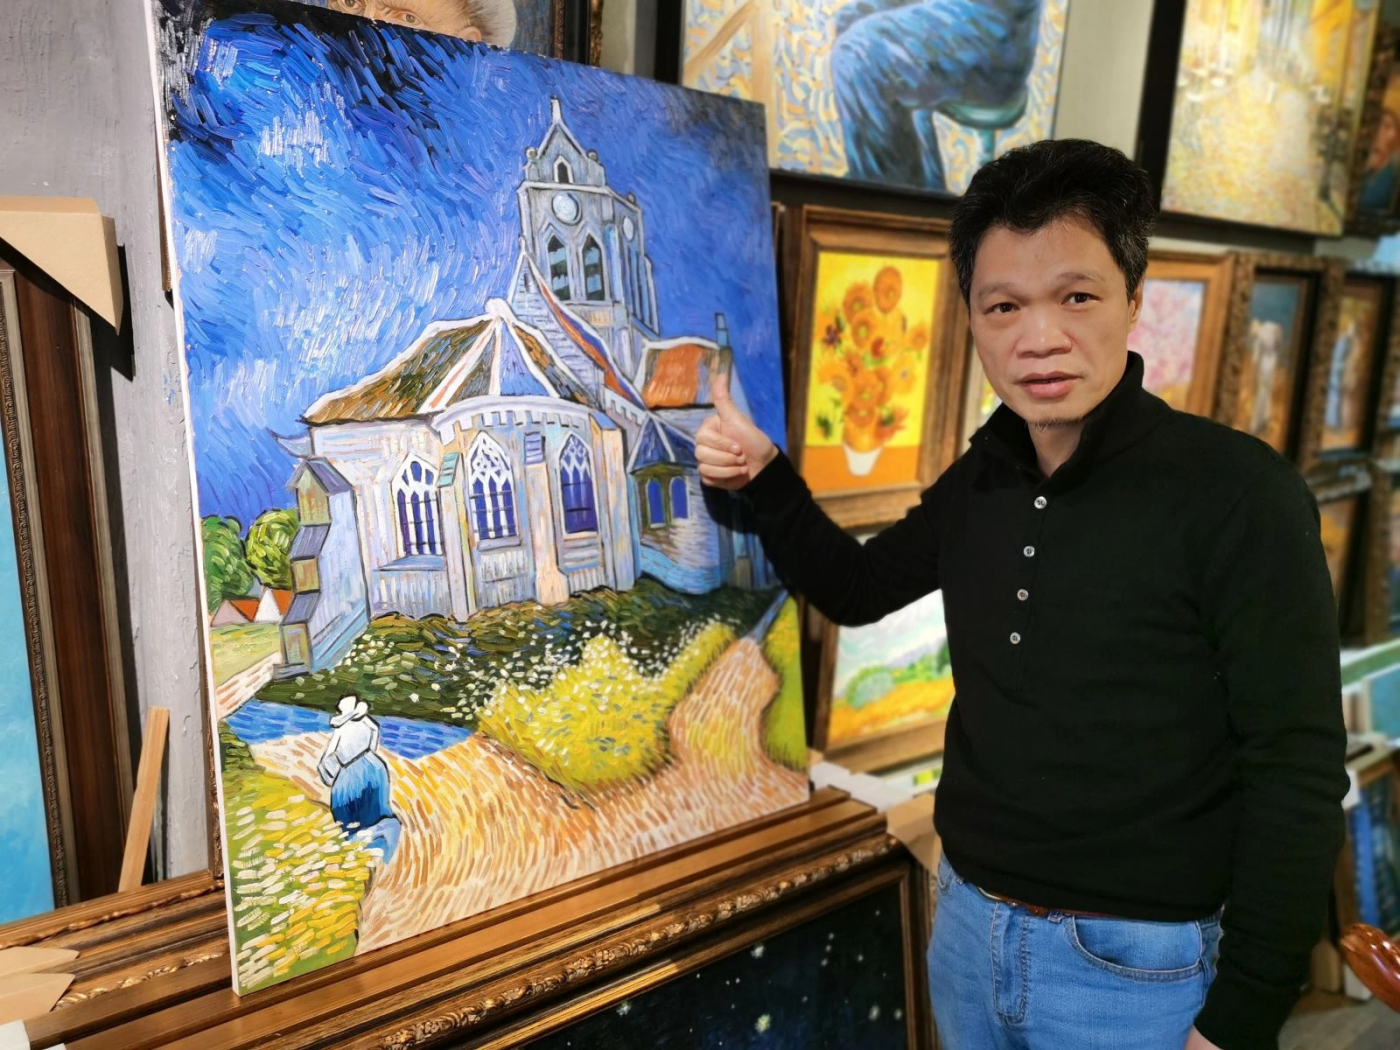 Làng tranh giả lớn nhất thế giới và hành trình tìm thấy chính mình của thợ vẽ sau 20 năm chép tranh Van Gogh